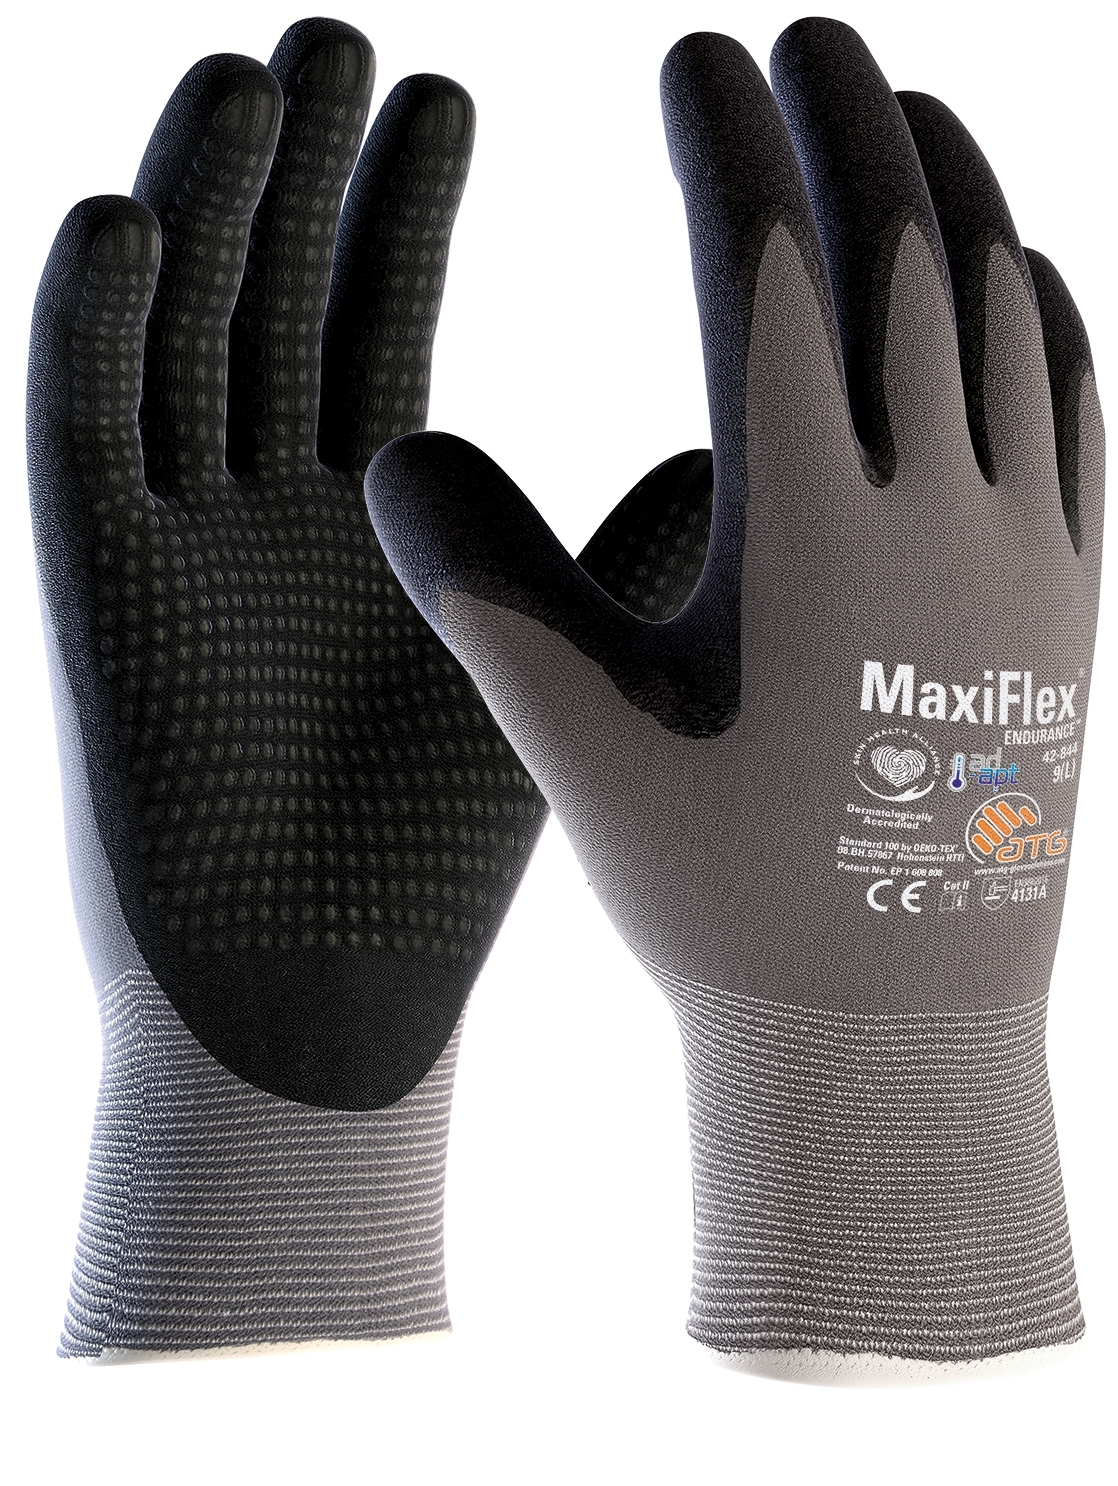 Klempnerhandschuh atmungsaktiv MaxiFlex Endurance Gr.10